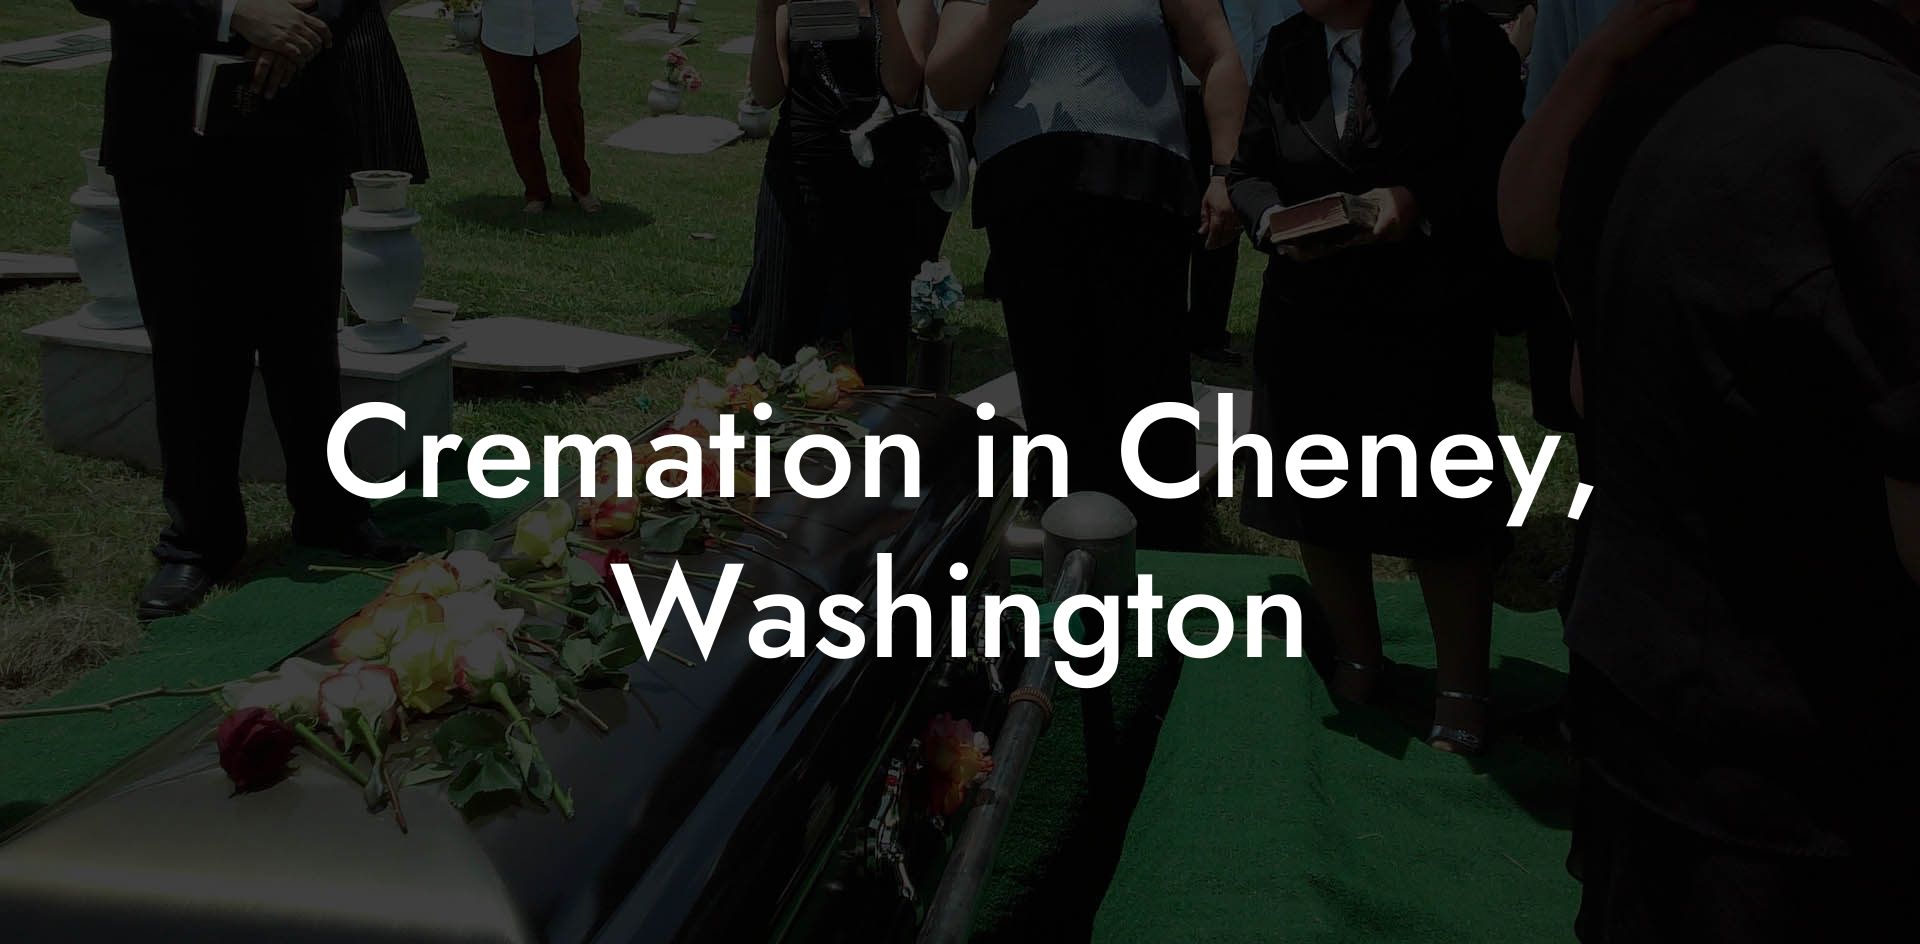 Cremation in Cheney, Washington